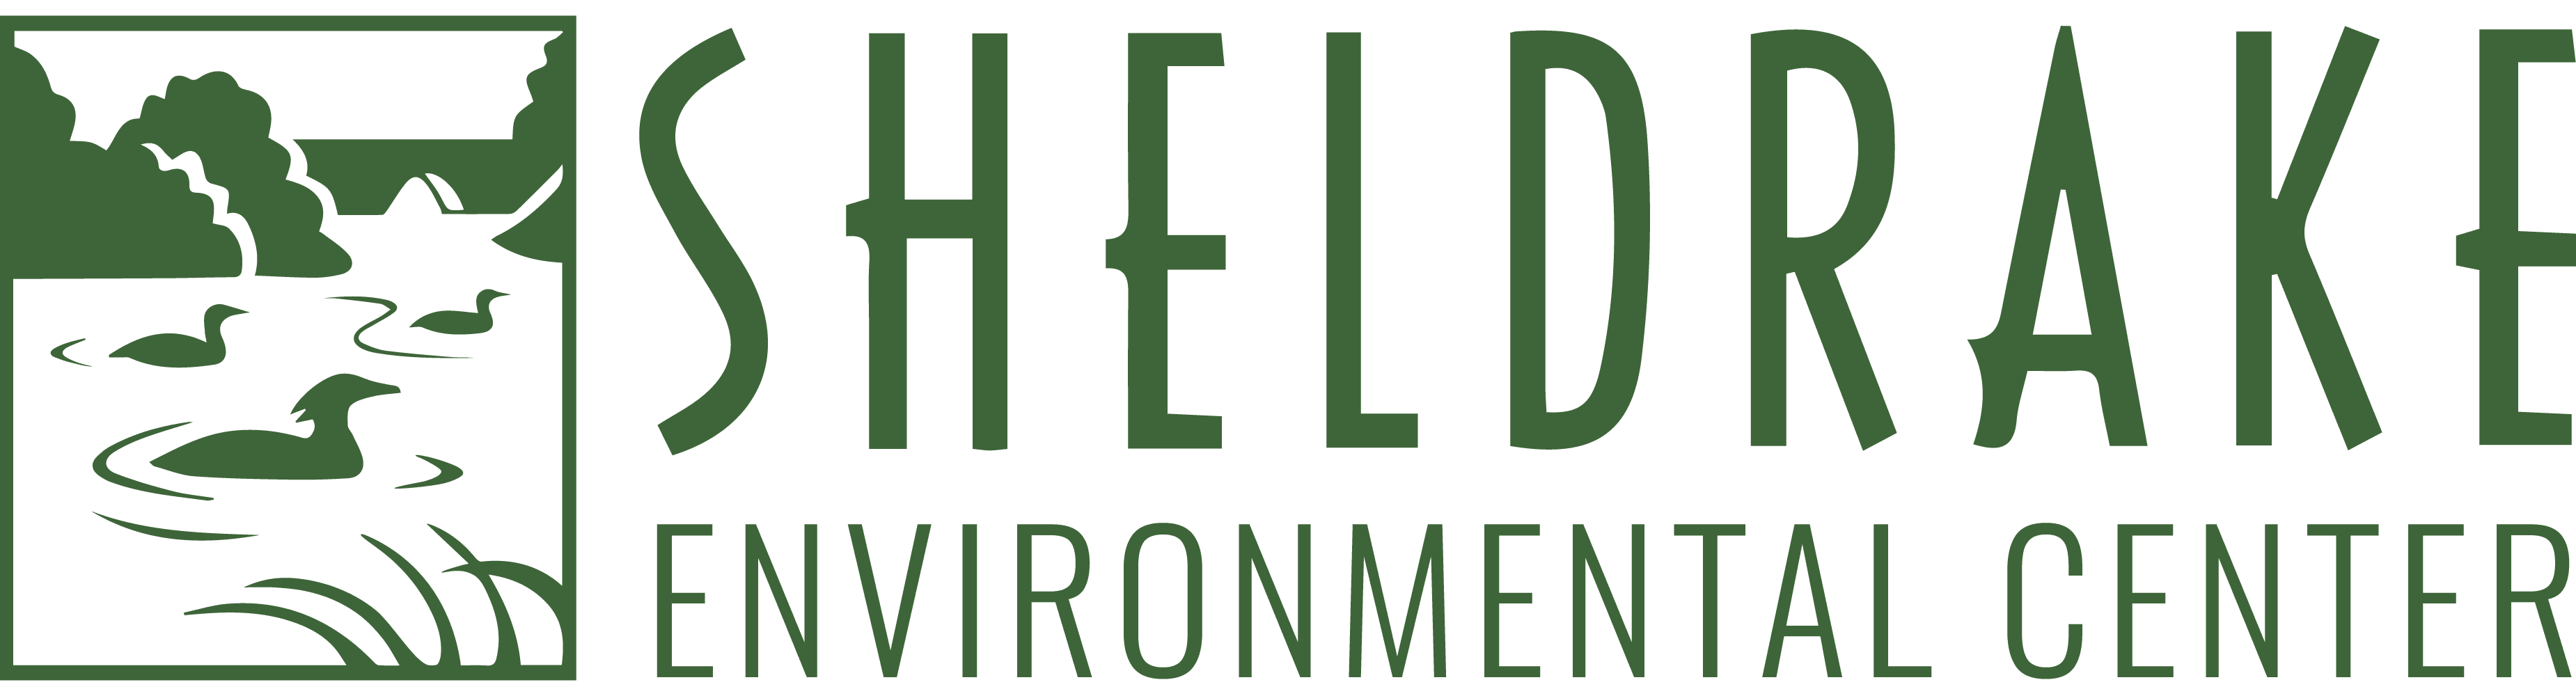 Sheldrake Environmental Center